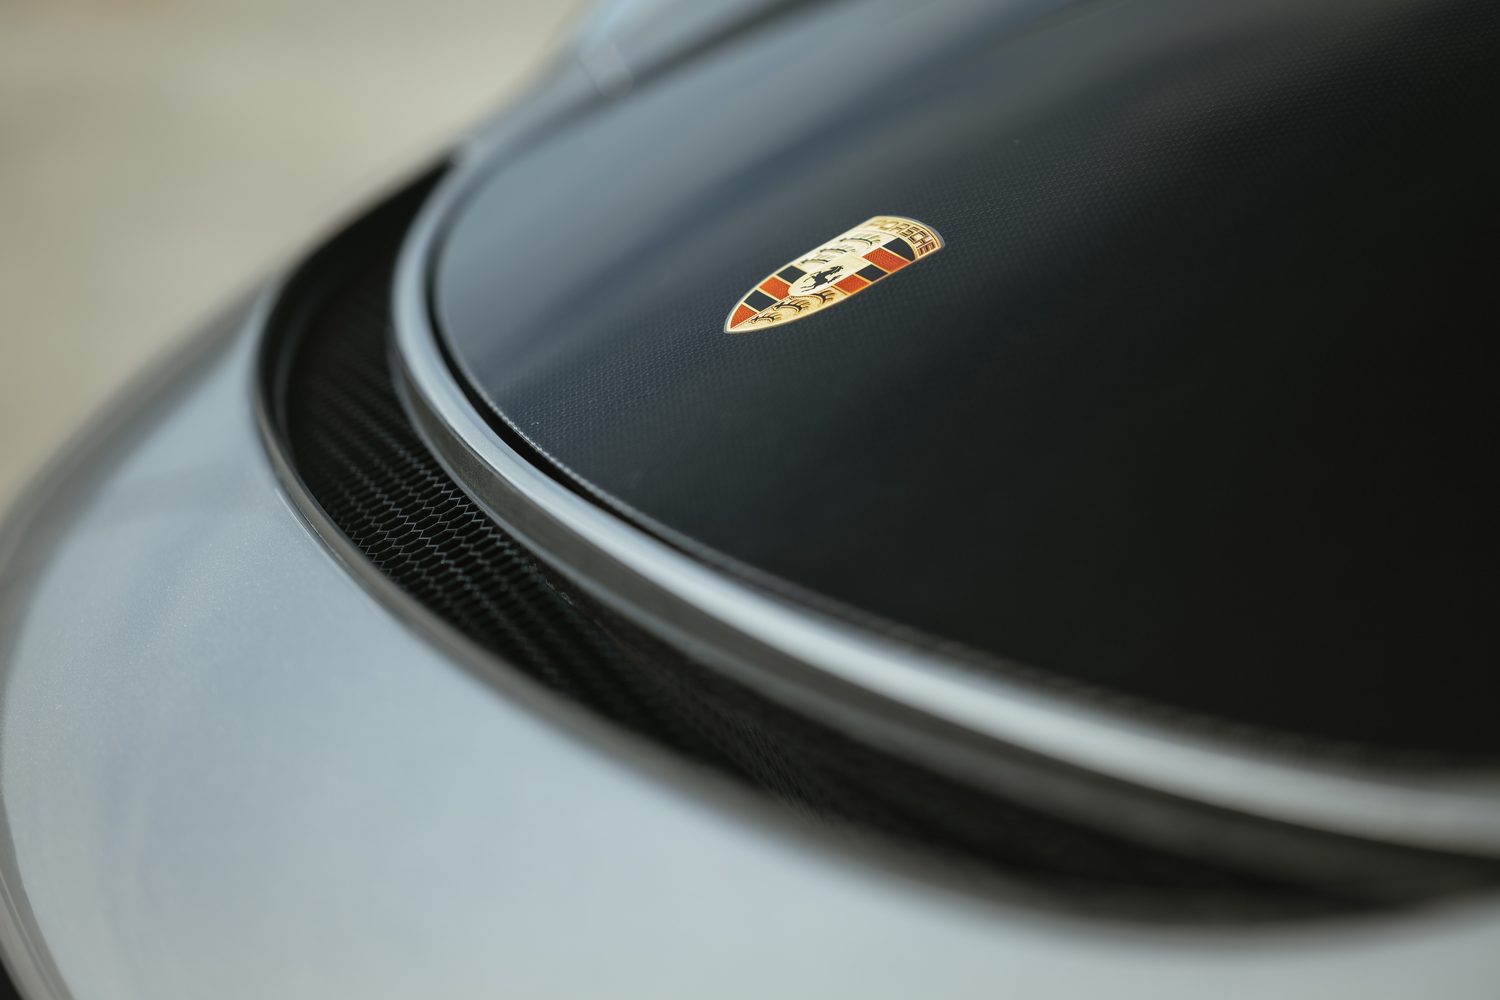 Porsche 718 Cayman GT4 RS (2022)